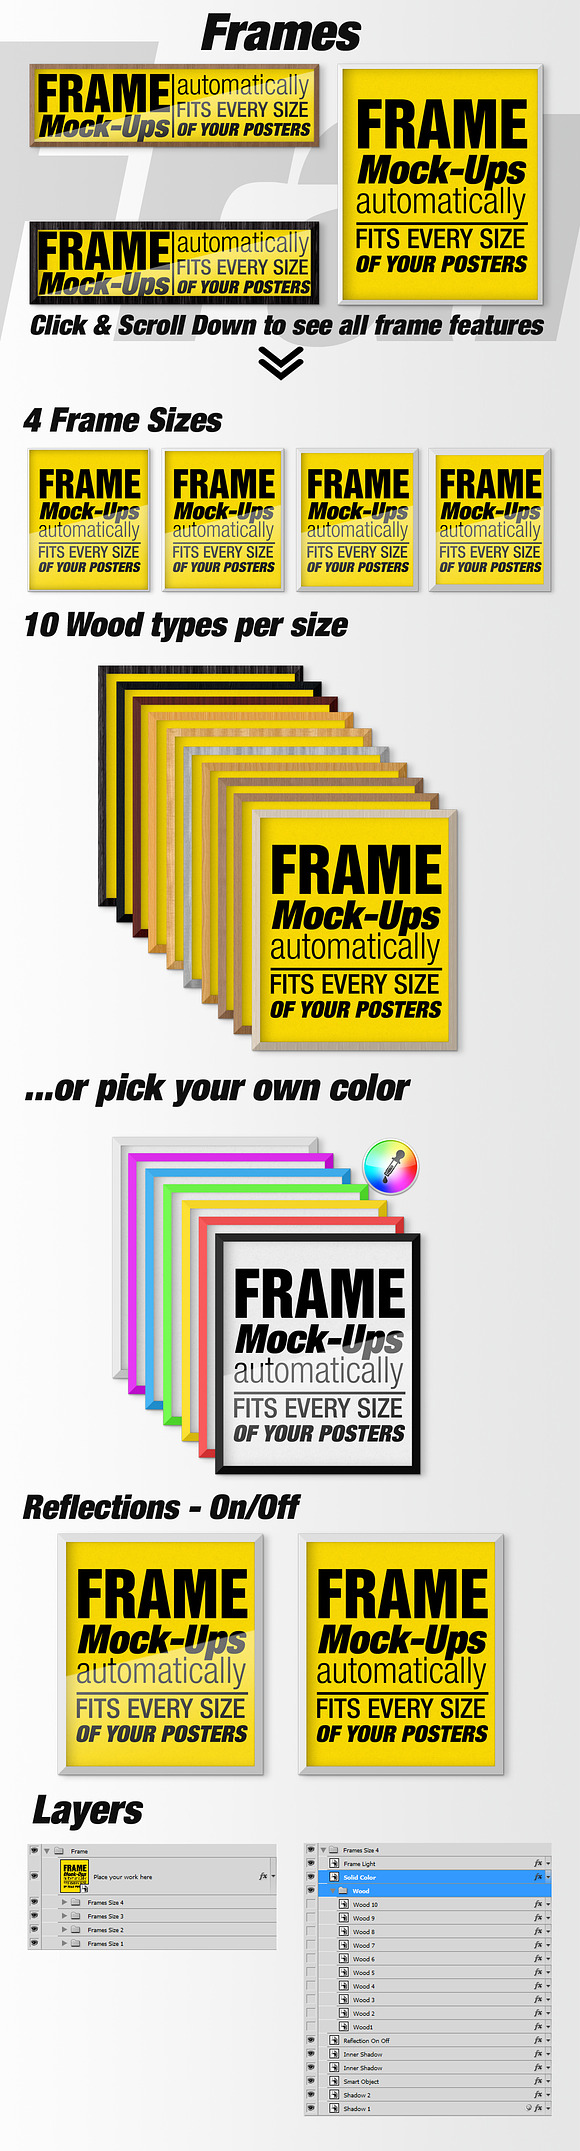 Canvas Mockups - Frames Mockups v 6 in Print Mockups - product preview 5